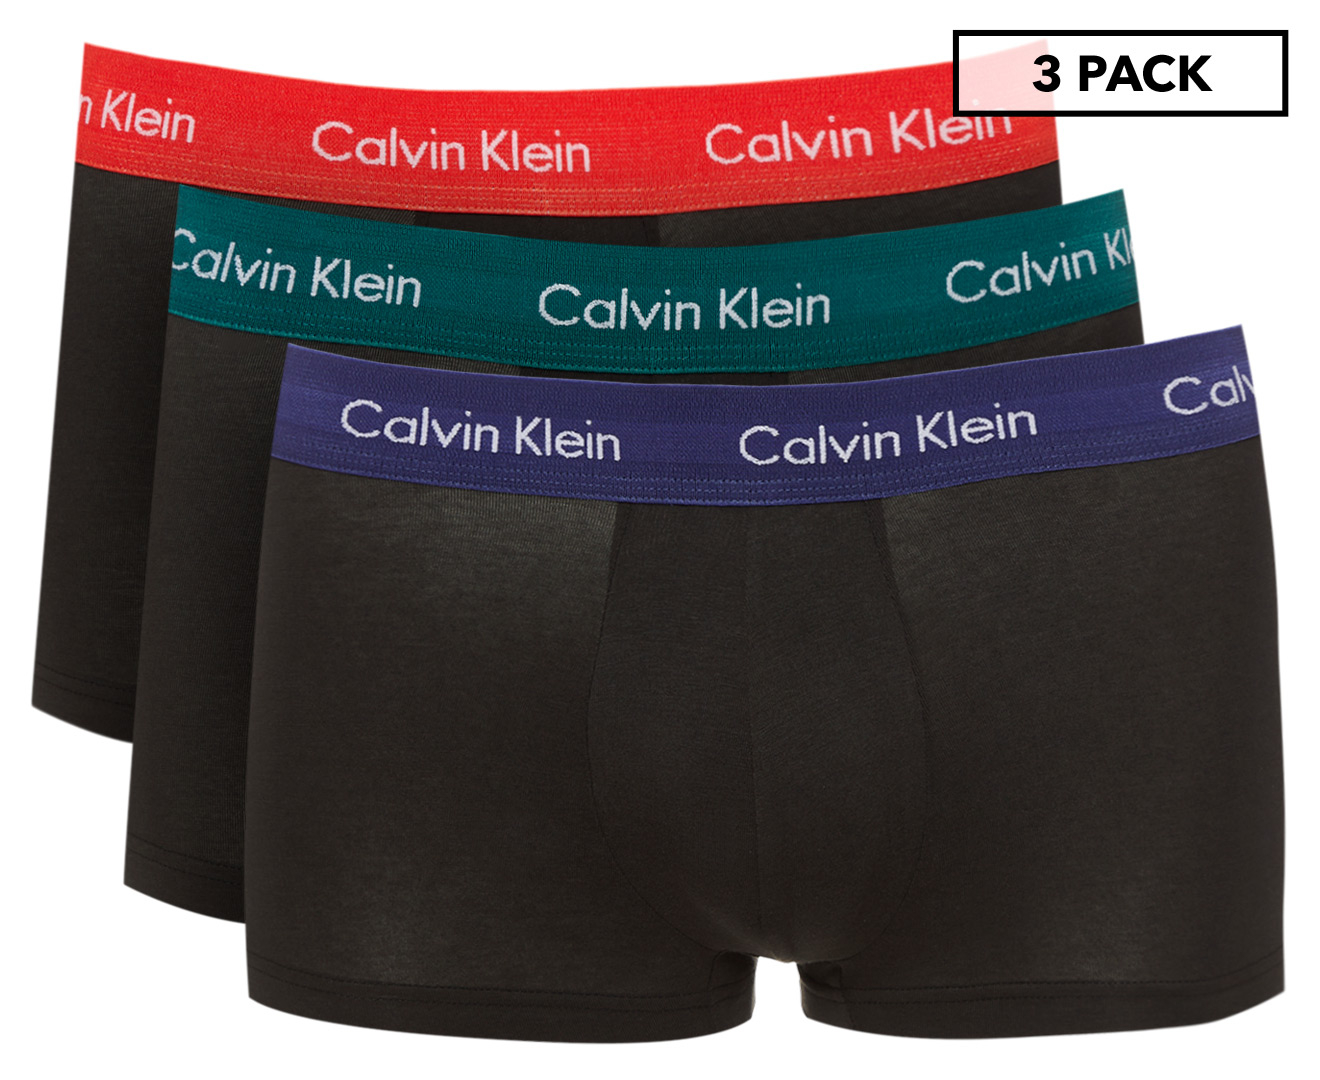 Fashion Men's Clothing Calvin Klein Calvin Klein Men's Classic Fit CK  Underwear Cotton Stretch 3 Pack Trunks 